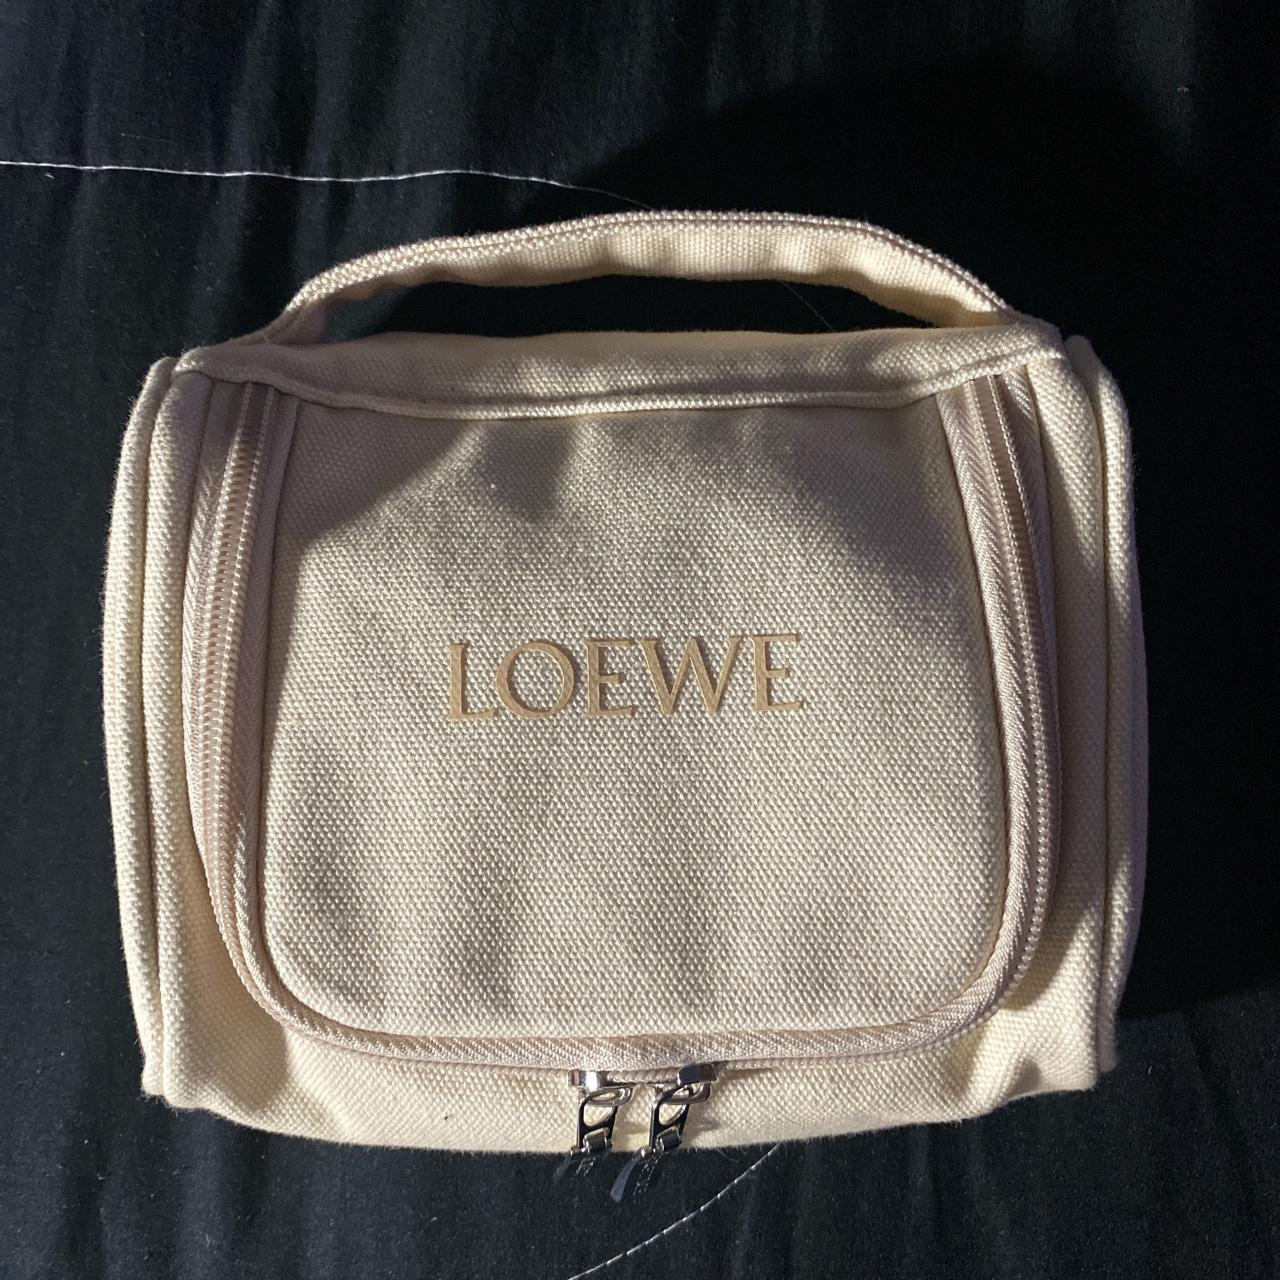 Loewe Women's Cream and Tan Bag